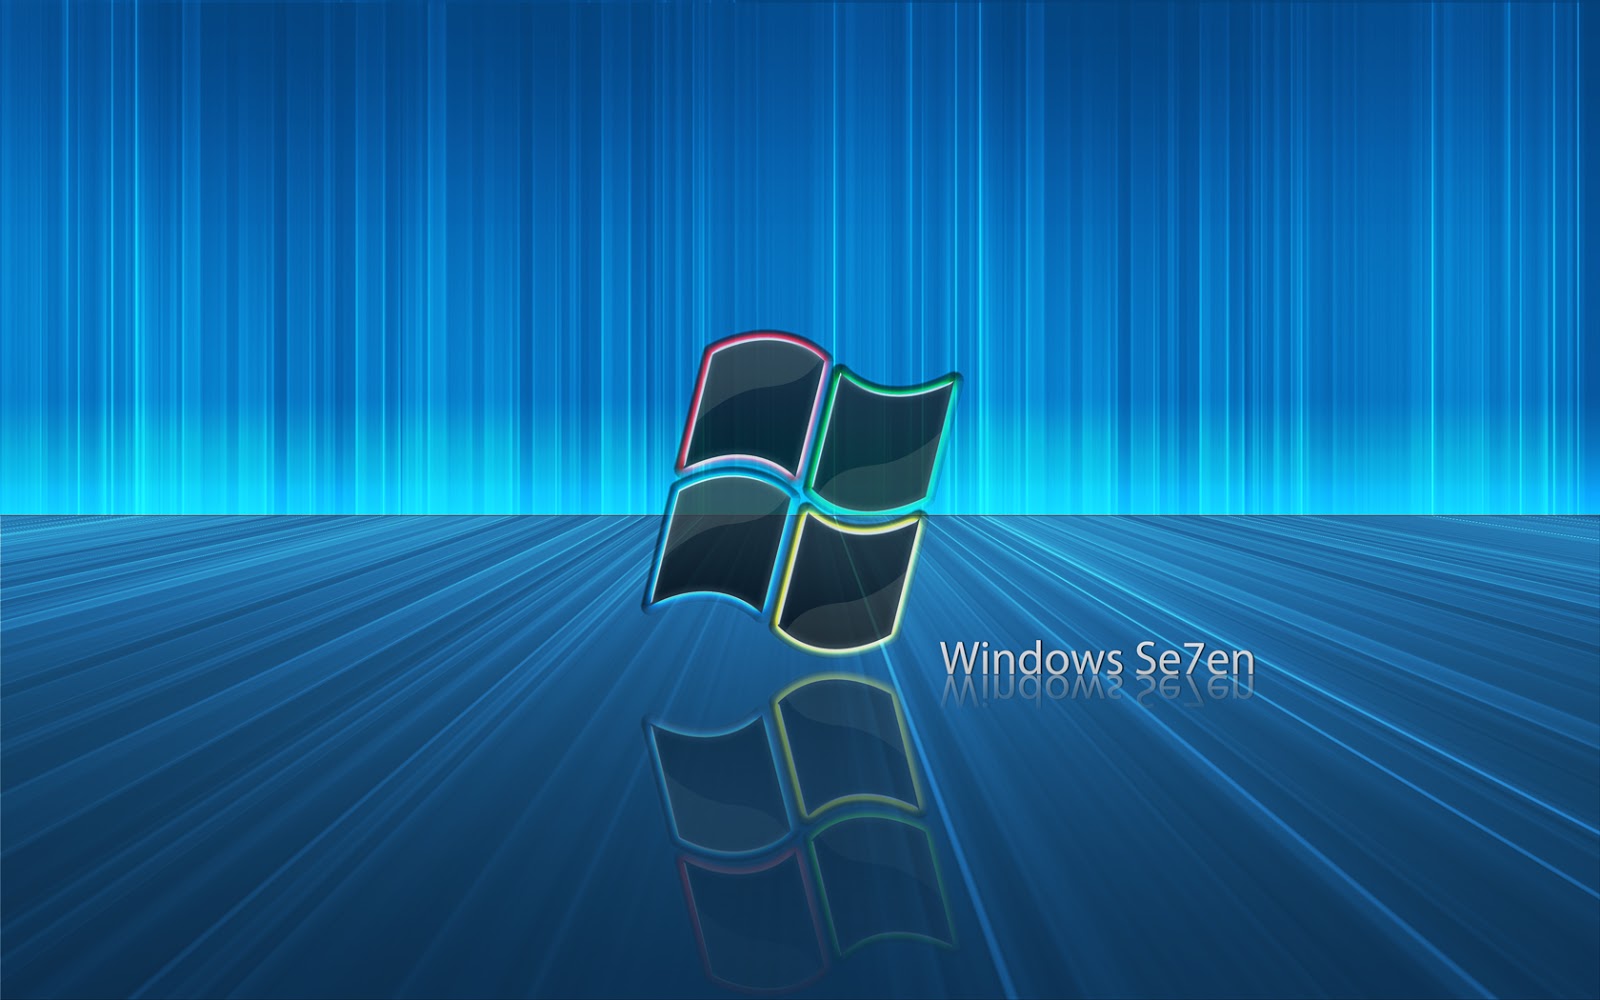 Microsoft Wallpapers: Free HD Download [500+ HQ] | Unsplash